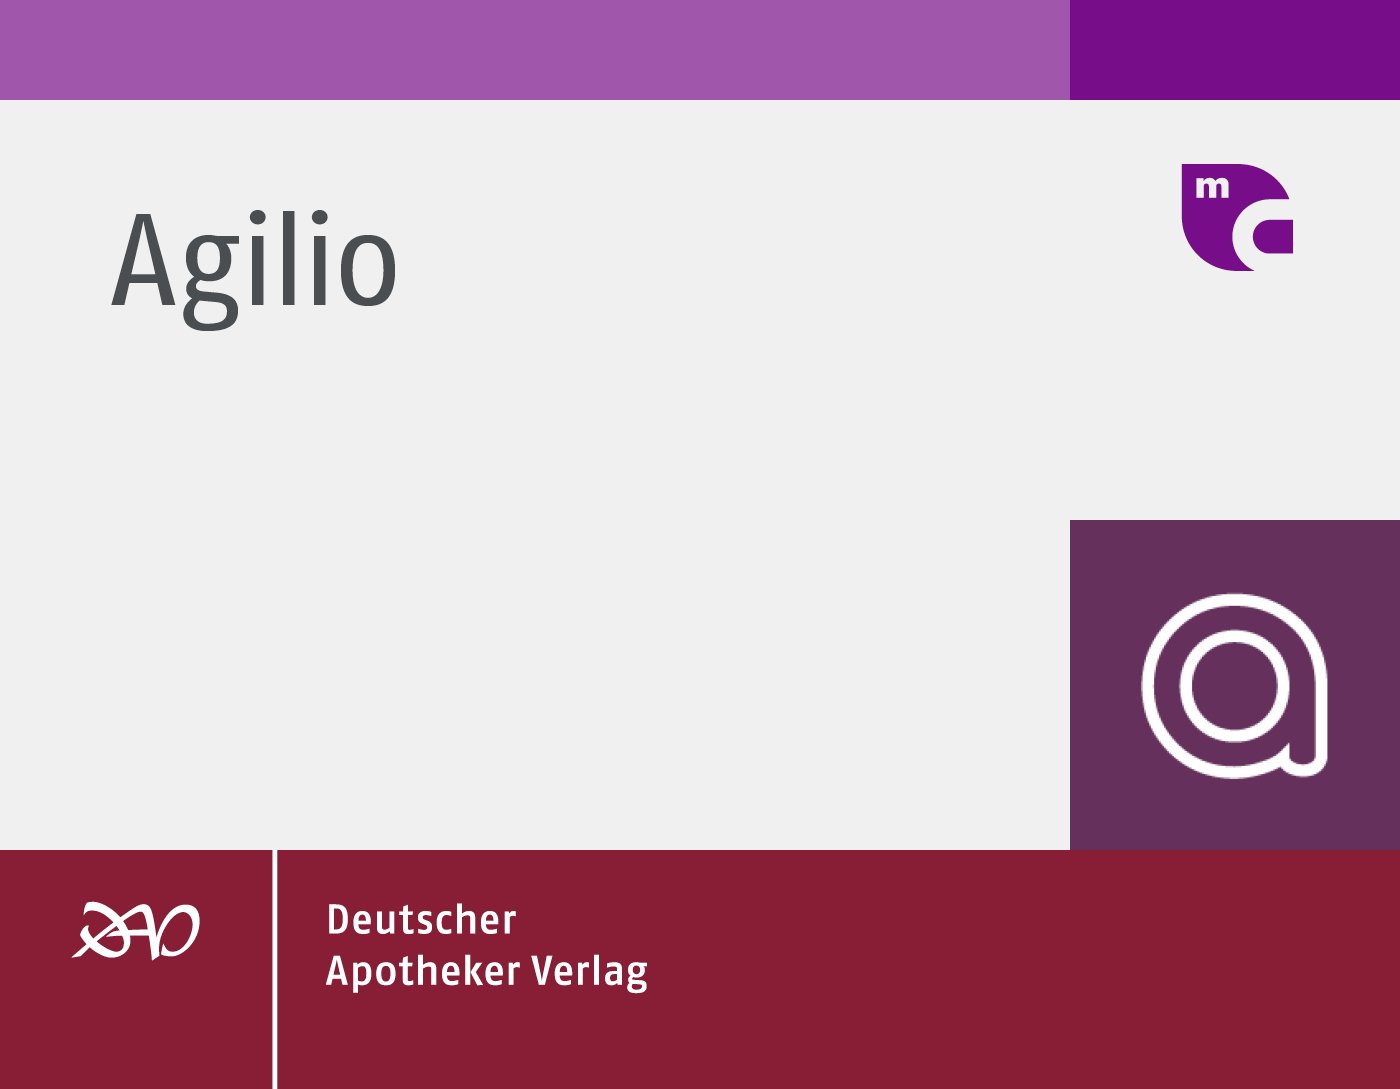 Agilio: Diagnosis and Treatment Guidance